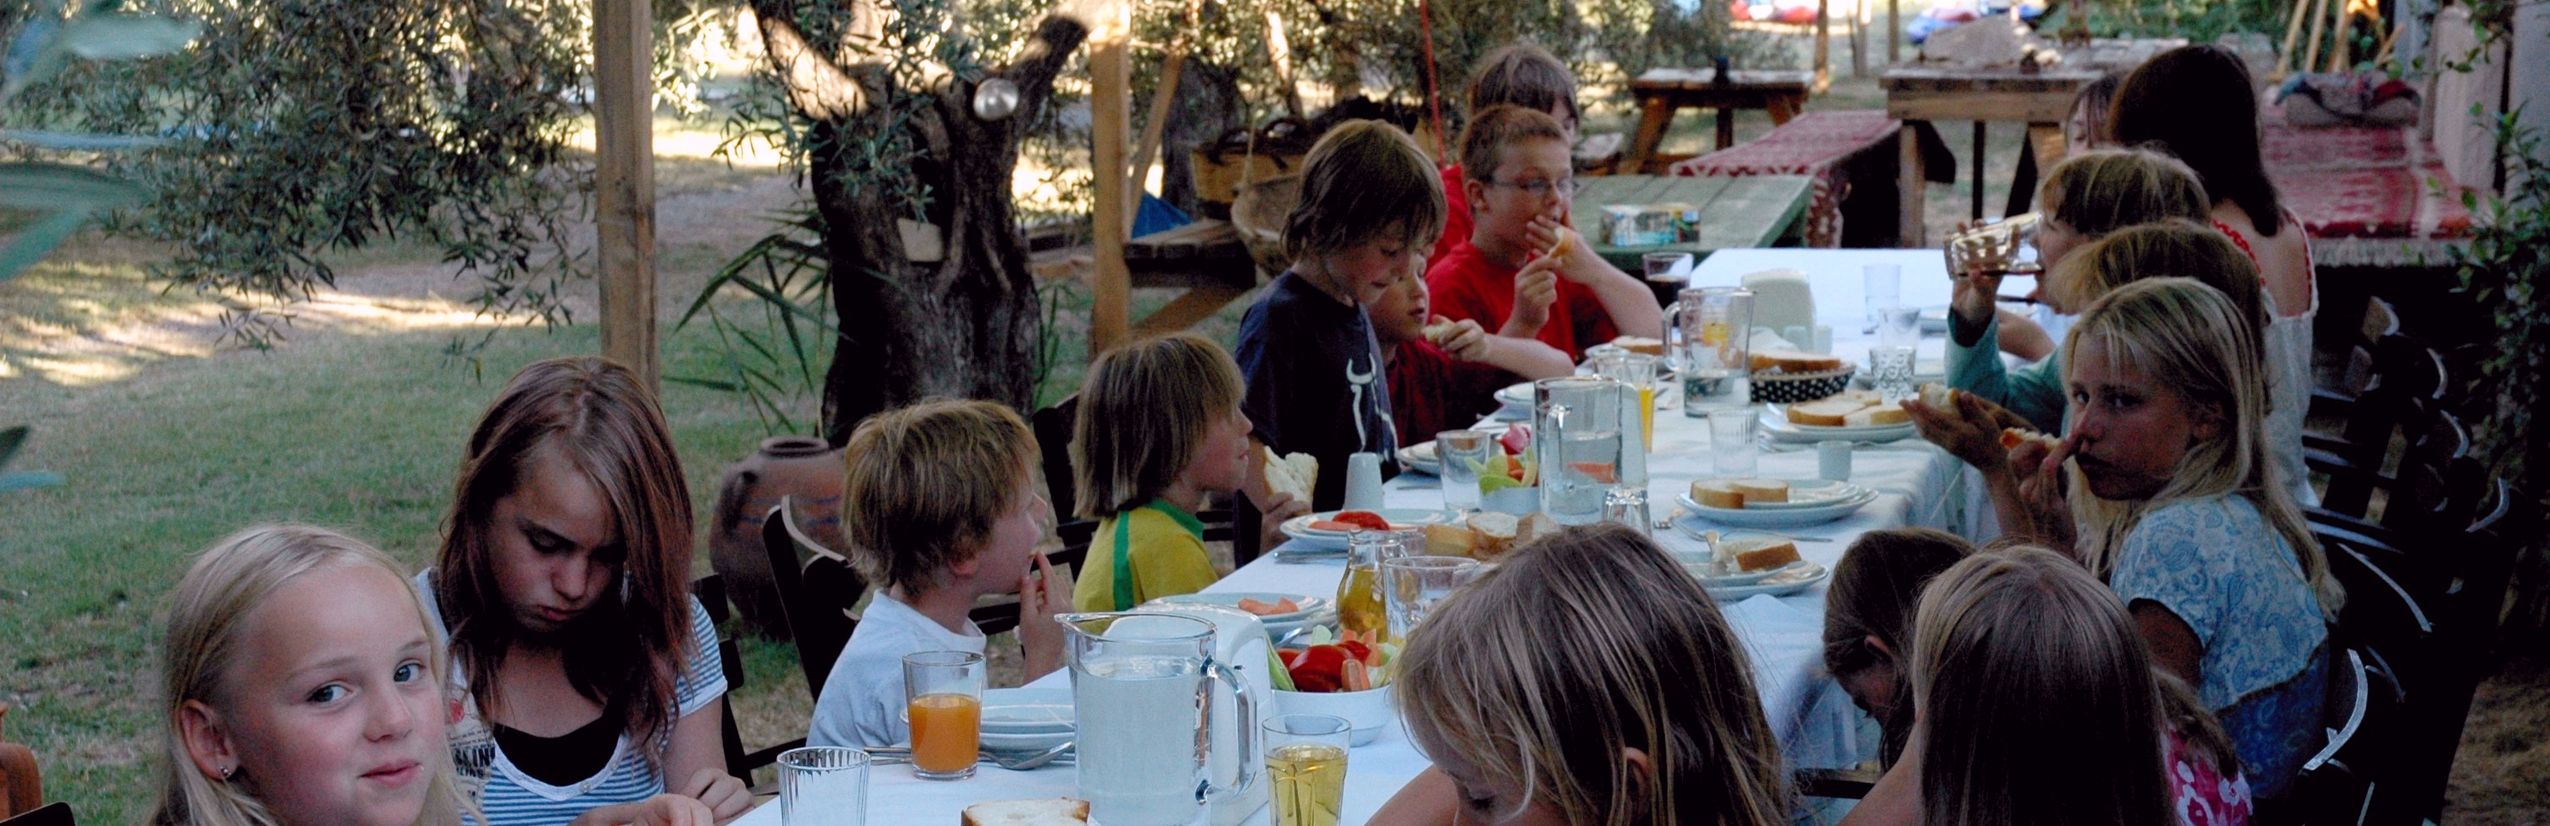 Familienurlaub in Irland - Kinder essen im Garten